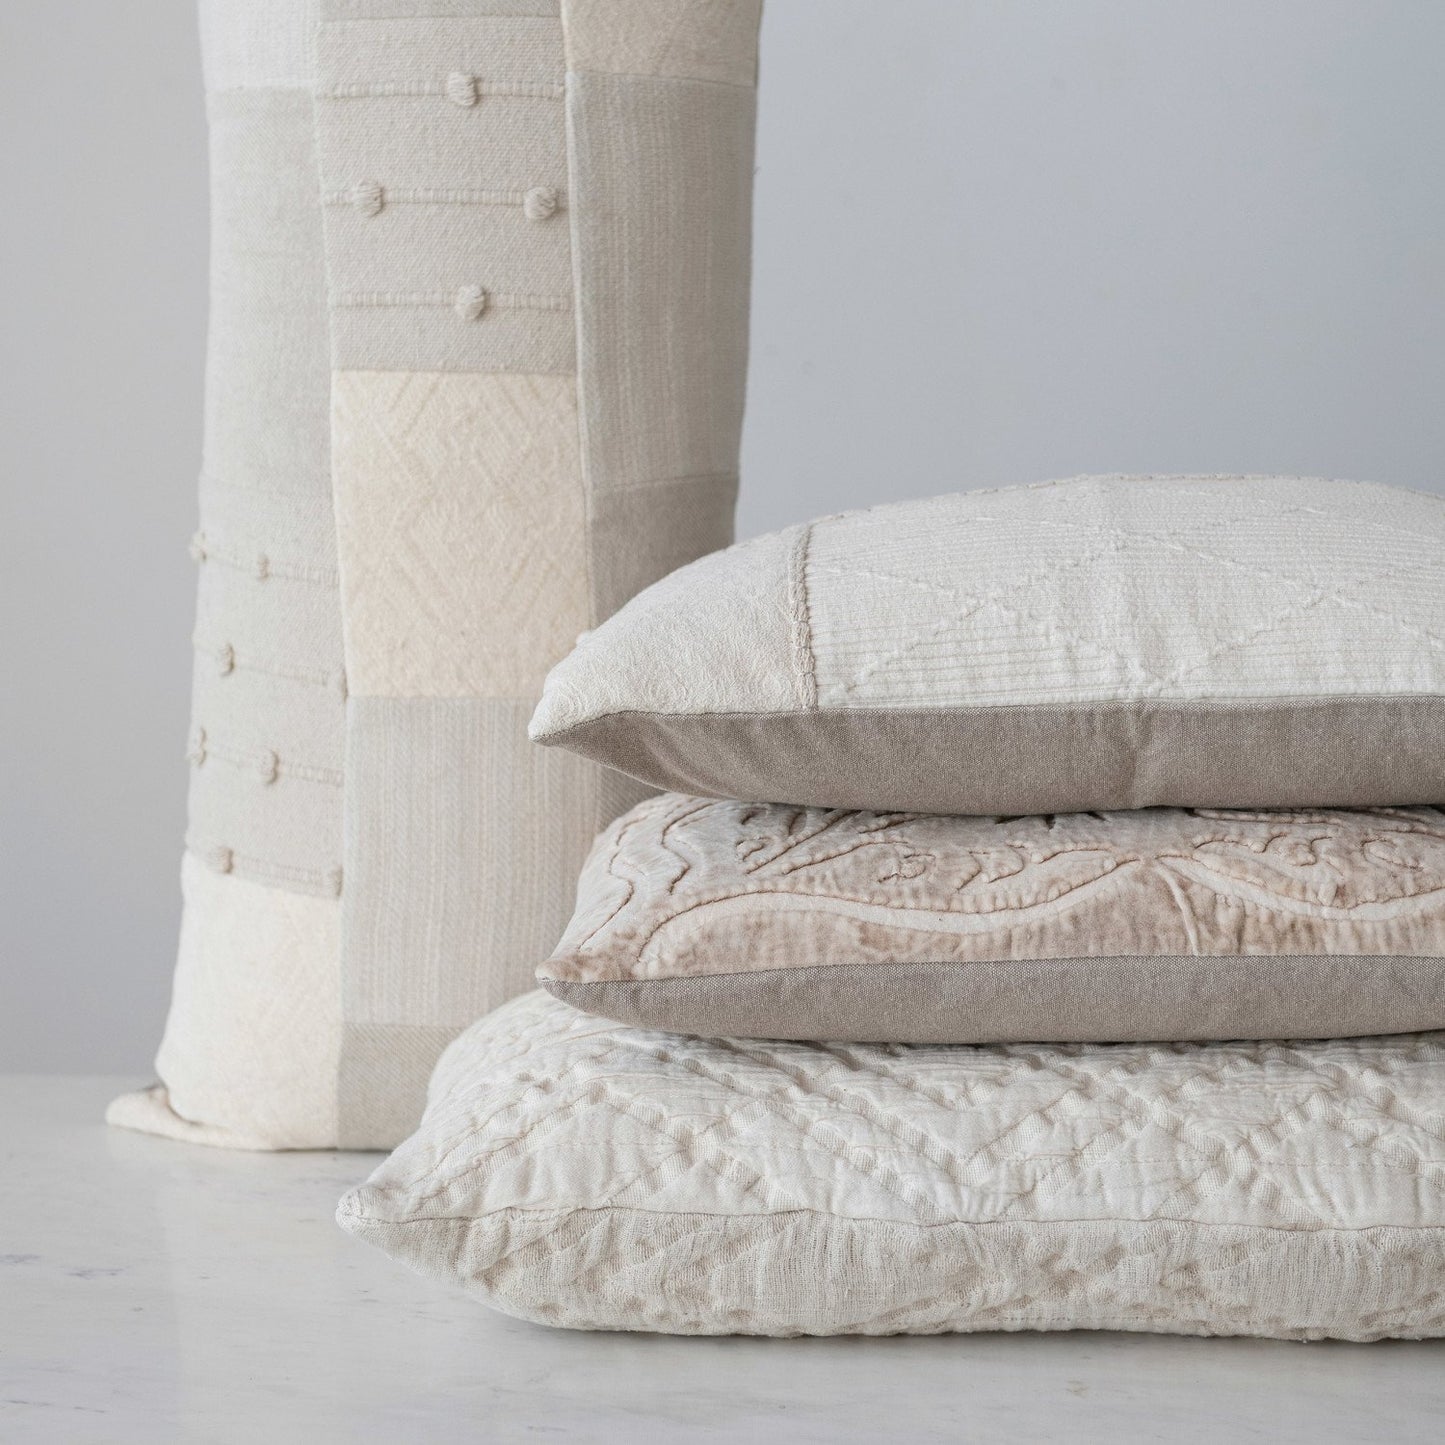 Long Woven Cotton Jacquard Lumbar Pillow